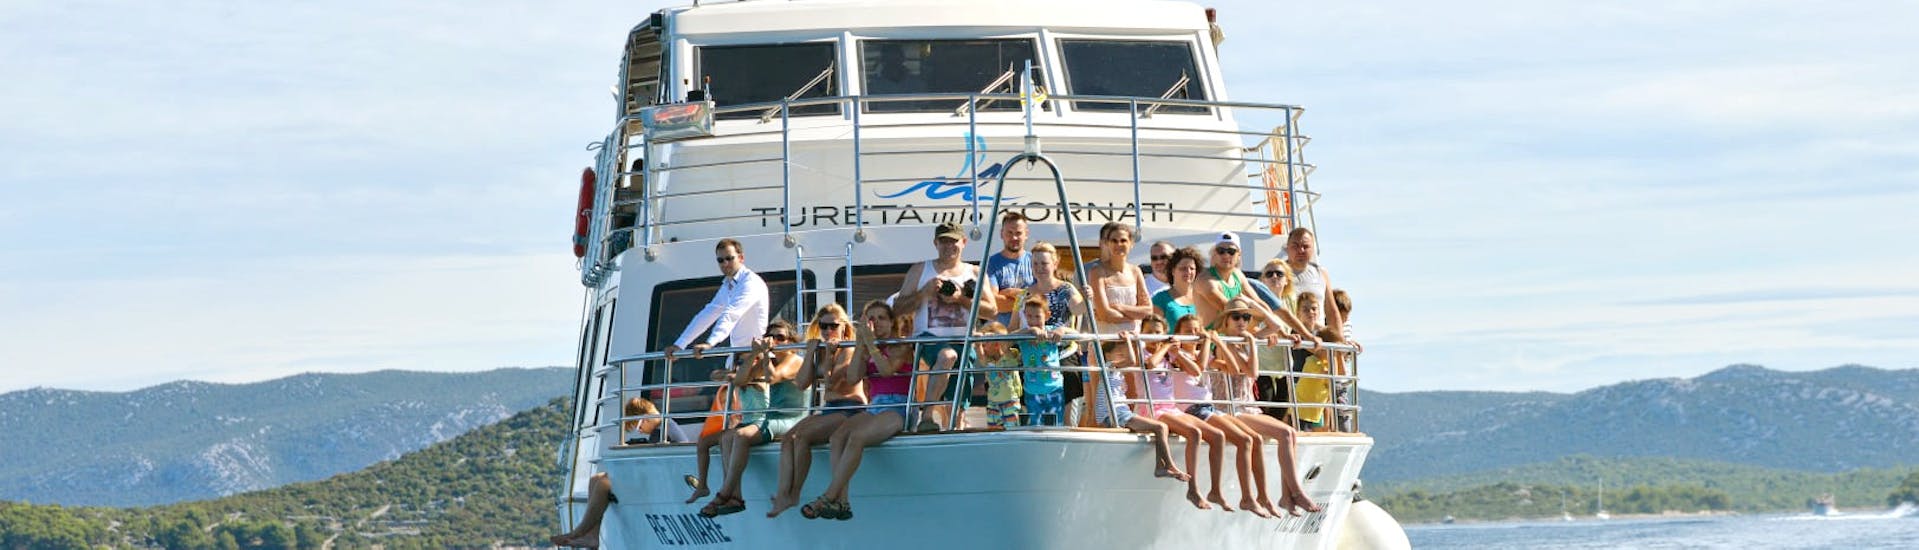 Mensen op de boot van Tureta Tours Murter tijdens de boottocht rond het Kornati National Park vanuit Murter.